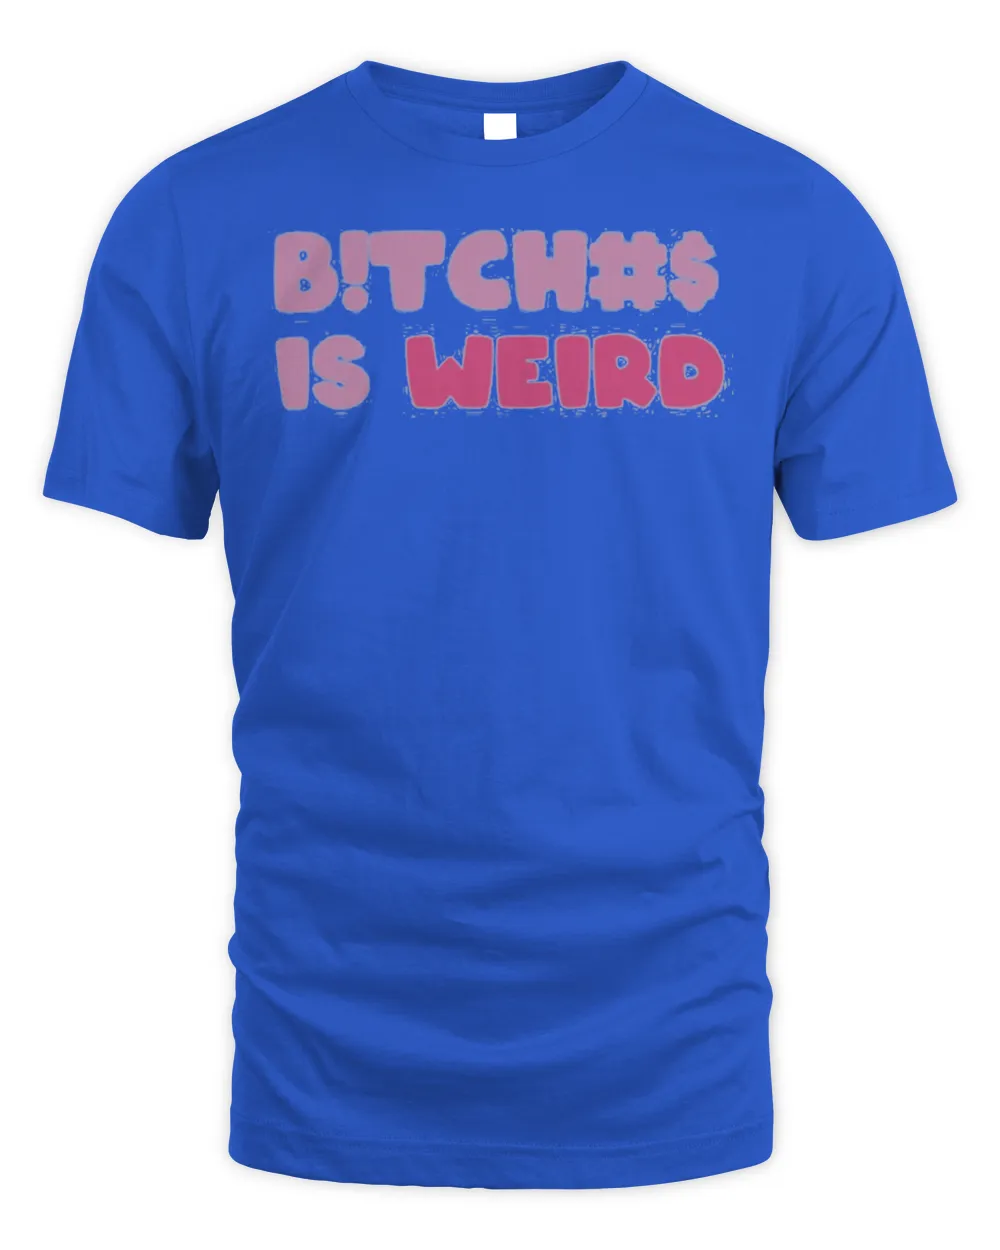 Bitches is weird t-shirt